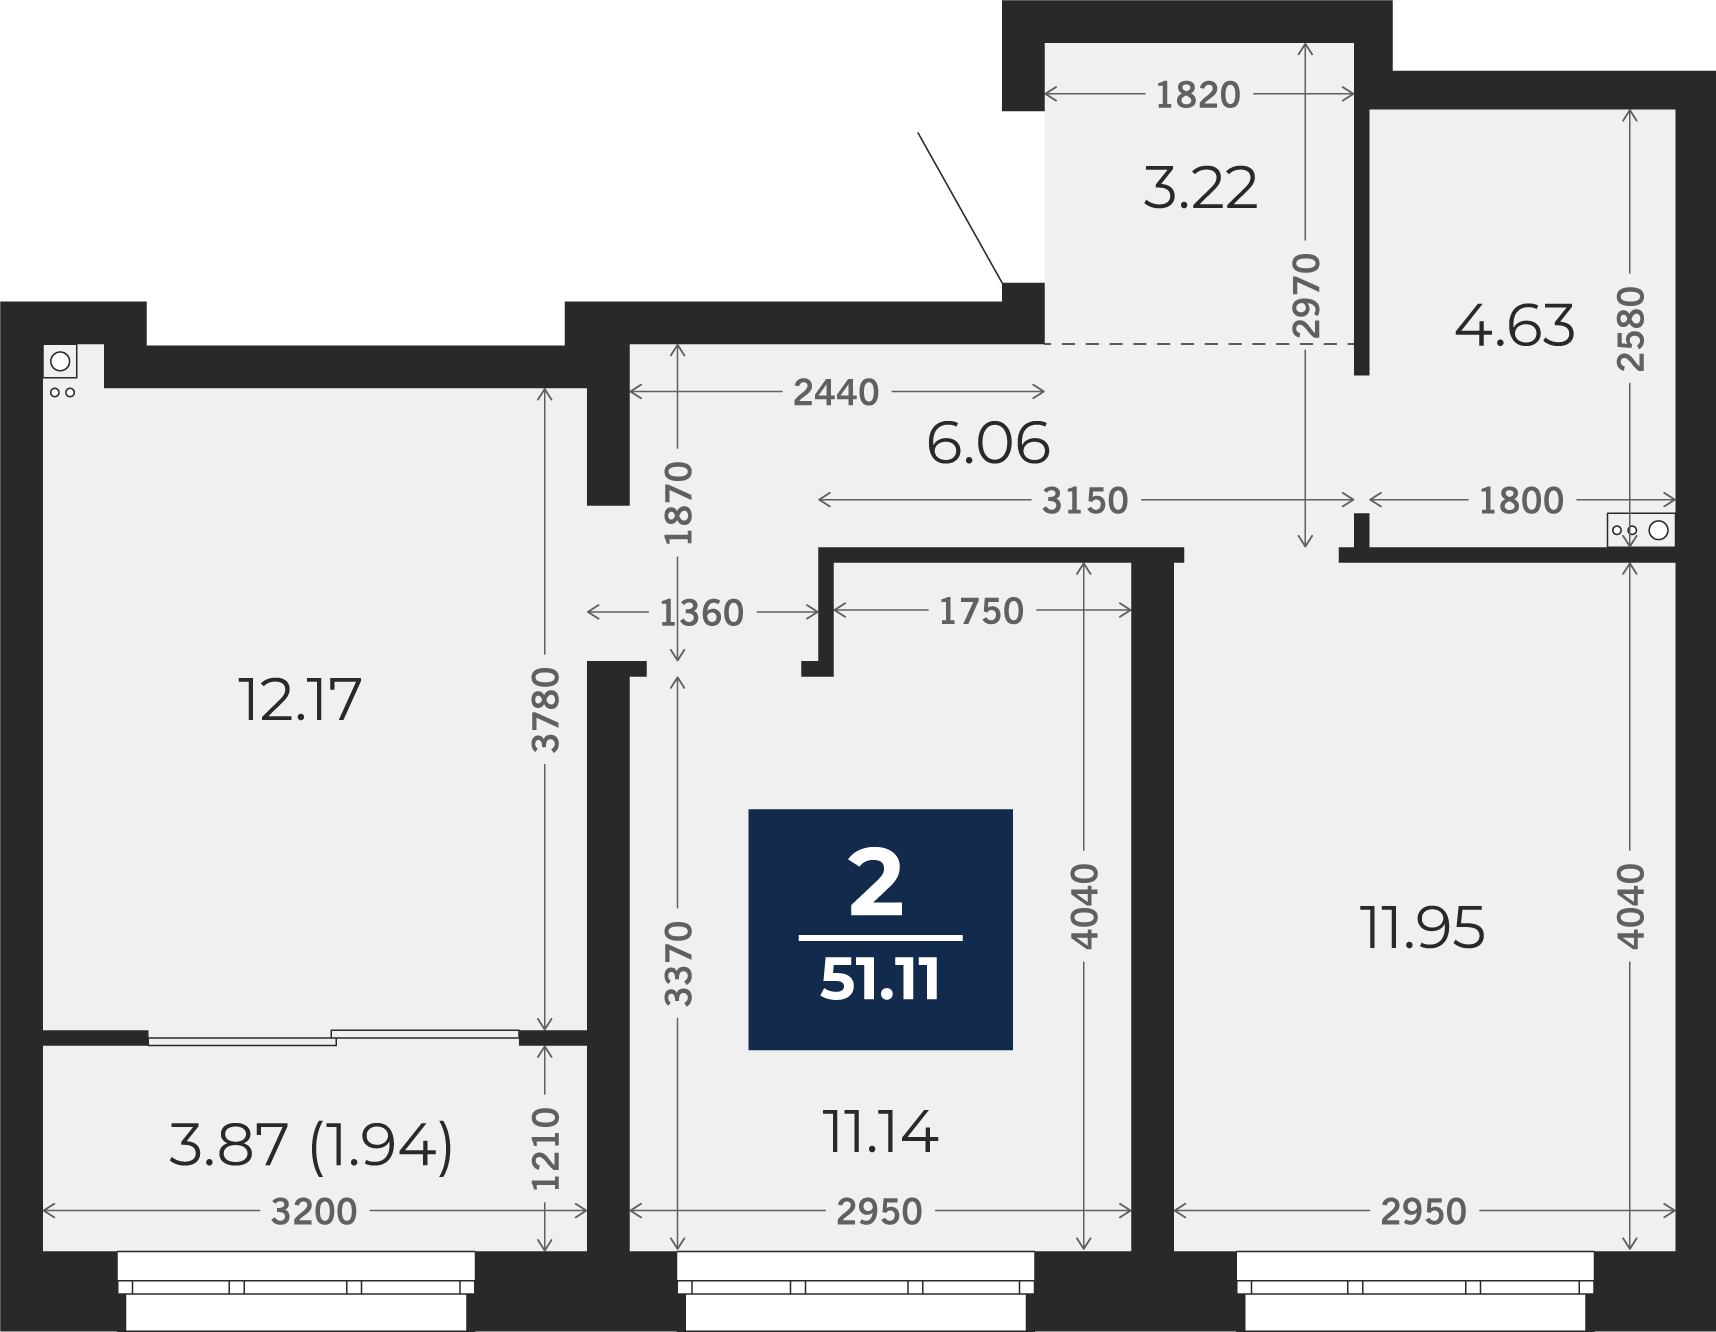 Квартира № 24, 2-комнатная, 51.11 кв. м, 6 этаж